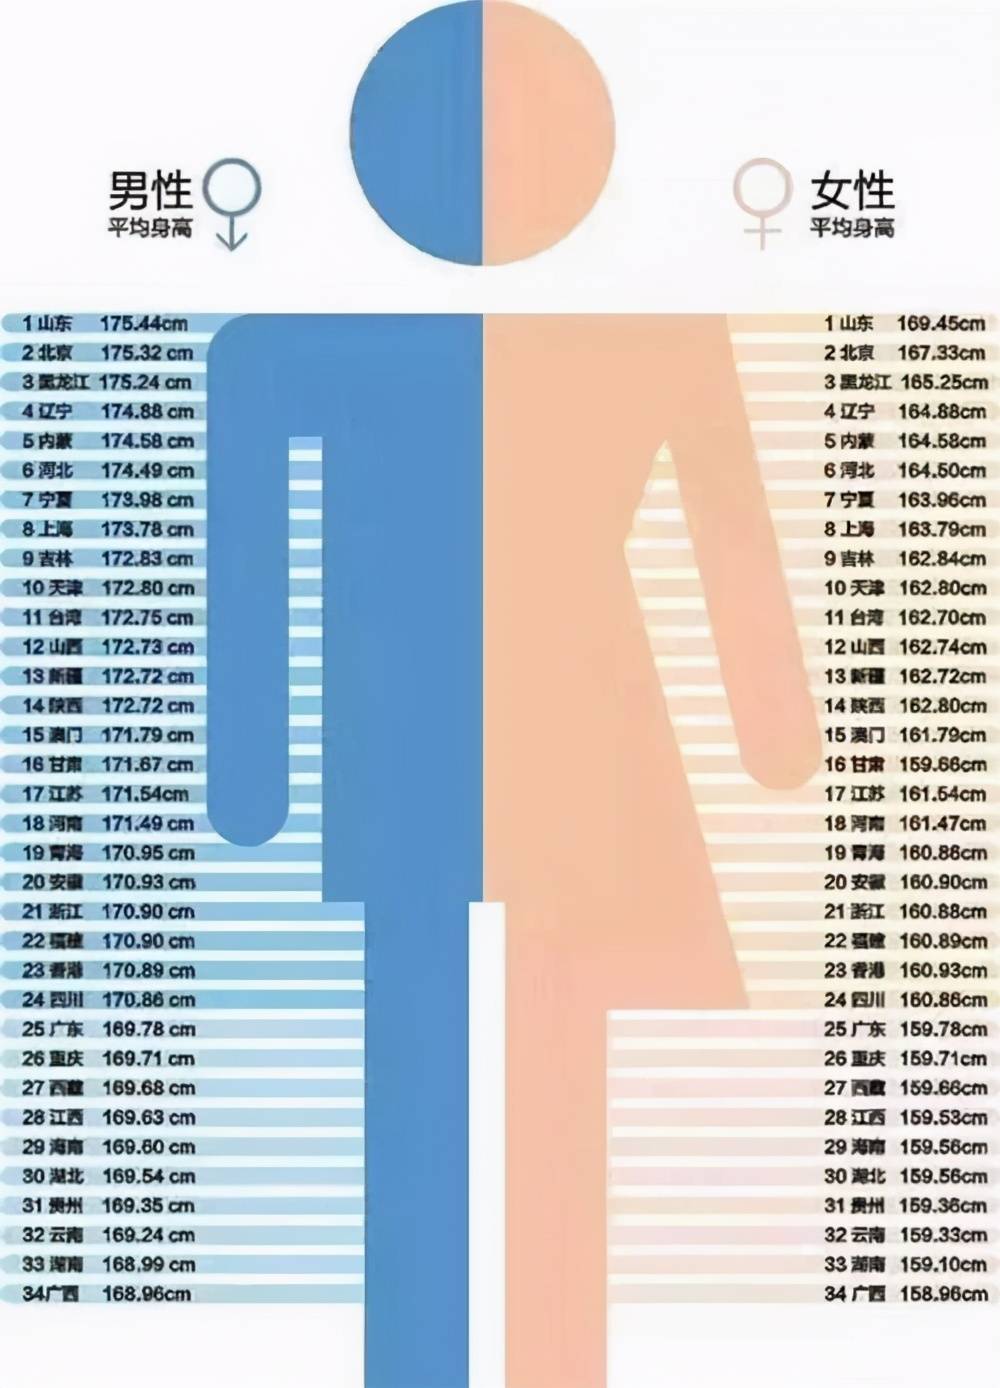 中国90后男女平均身高图片